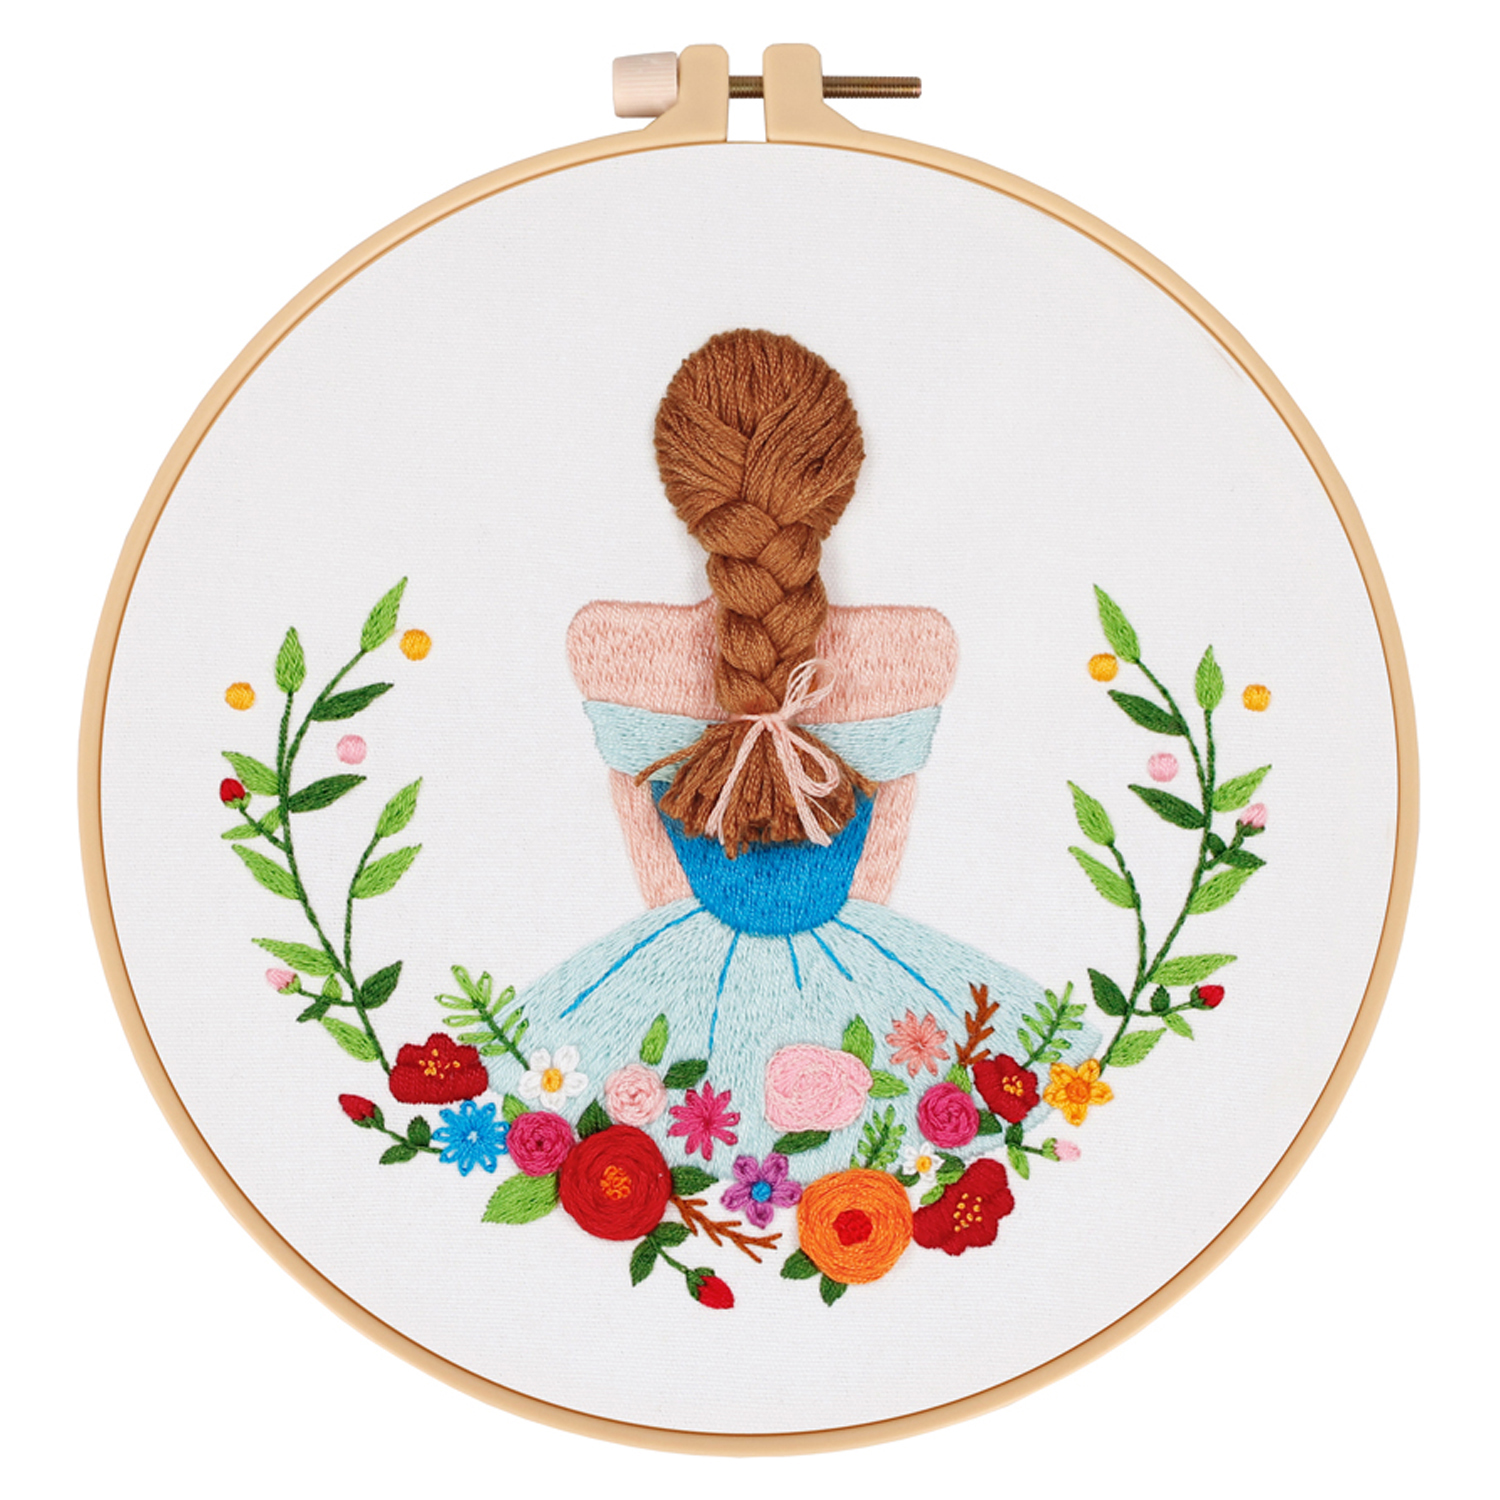 Handmade Embroidery Kit for Adult Beginner - Girl Pattern